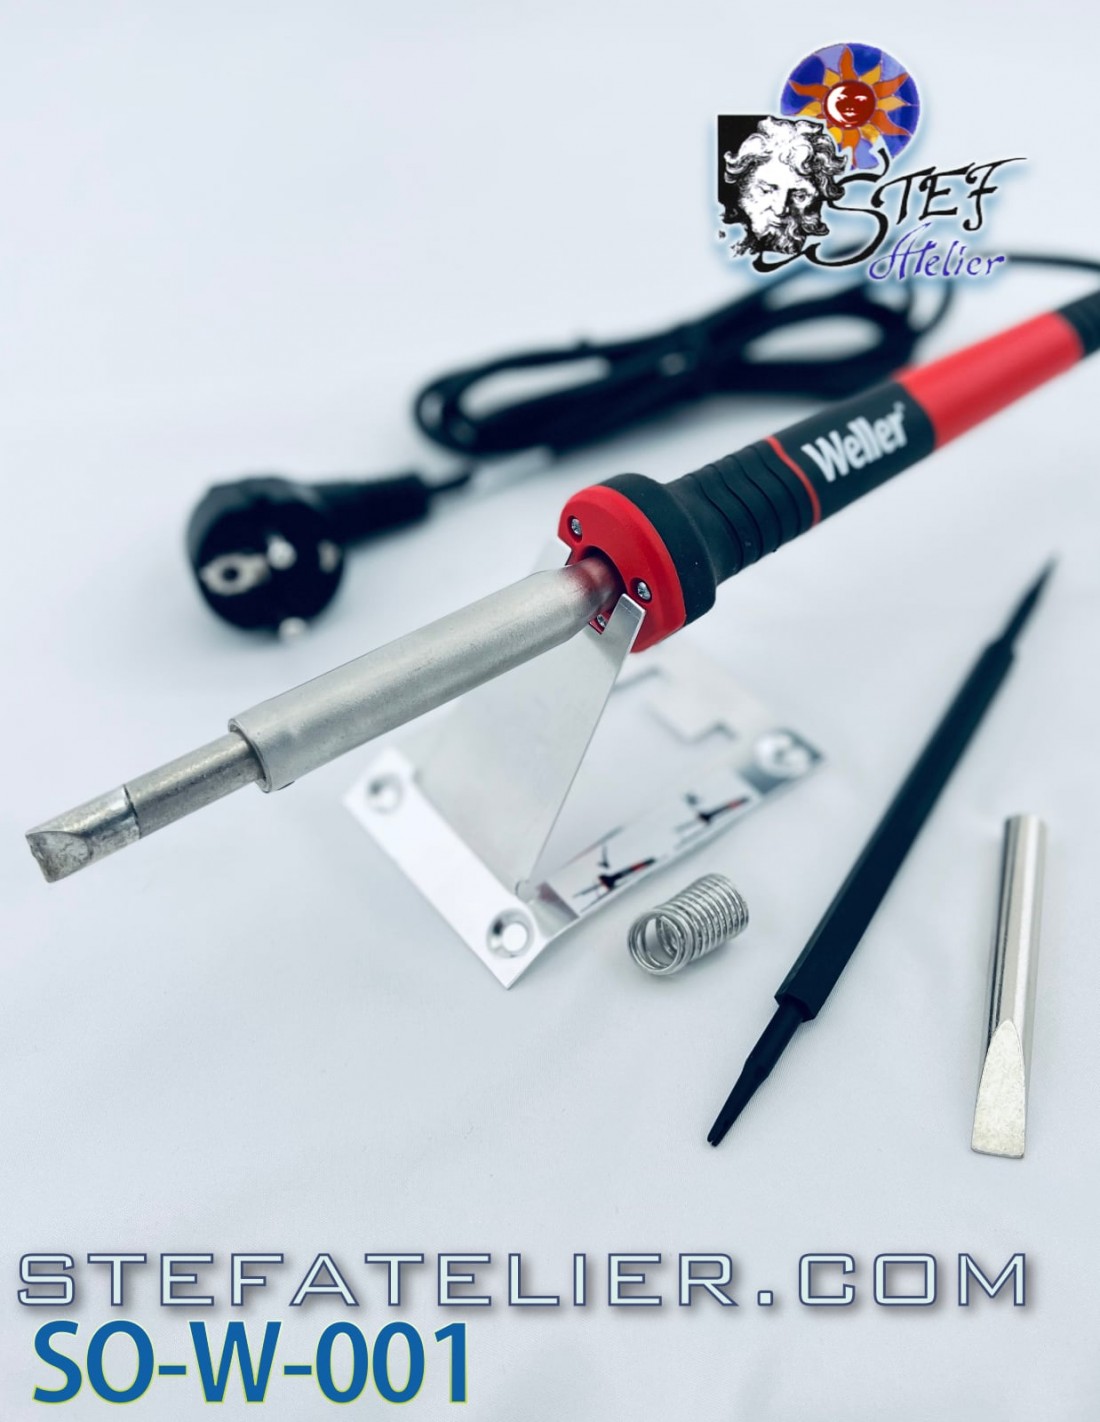 Acheter Kit d'outils de stylo de fer à souder électrique 80W 110V